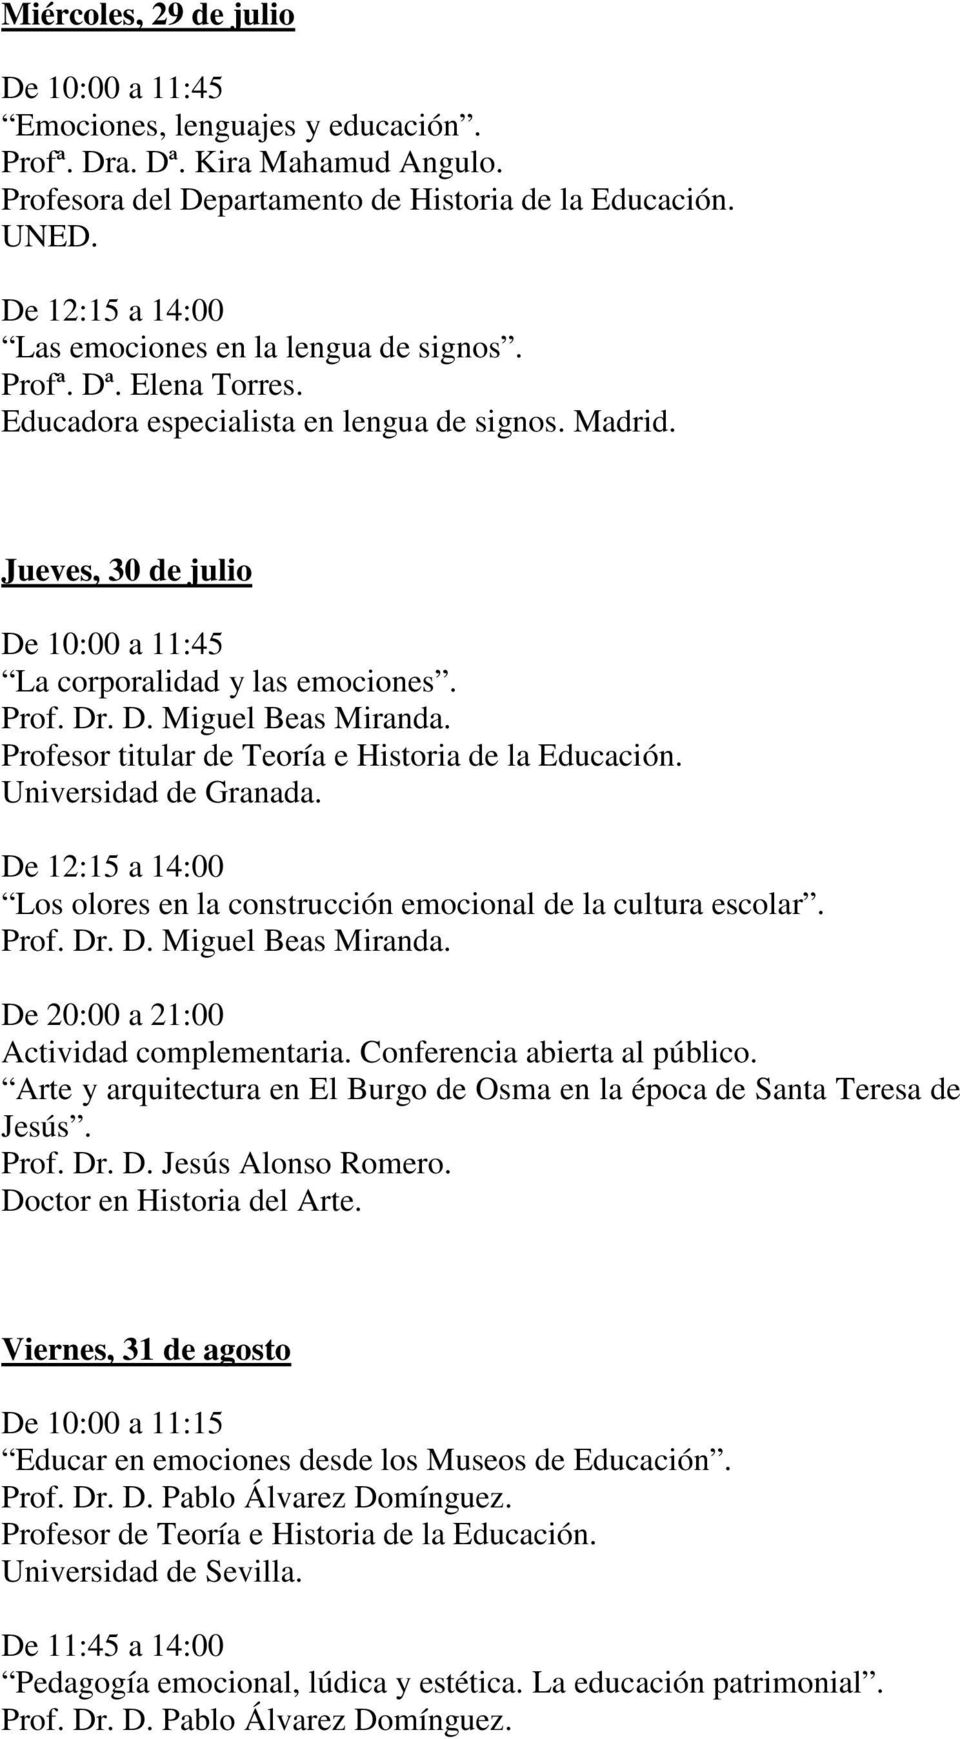 Universidad de Granada. Los olores en la construcción emocional de la cultura escolar. Prof. Dr. D. Miguel Beas Miranda. De 20:00 a 21:00 Actividad complementaria. Conferencia abierta al público.